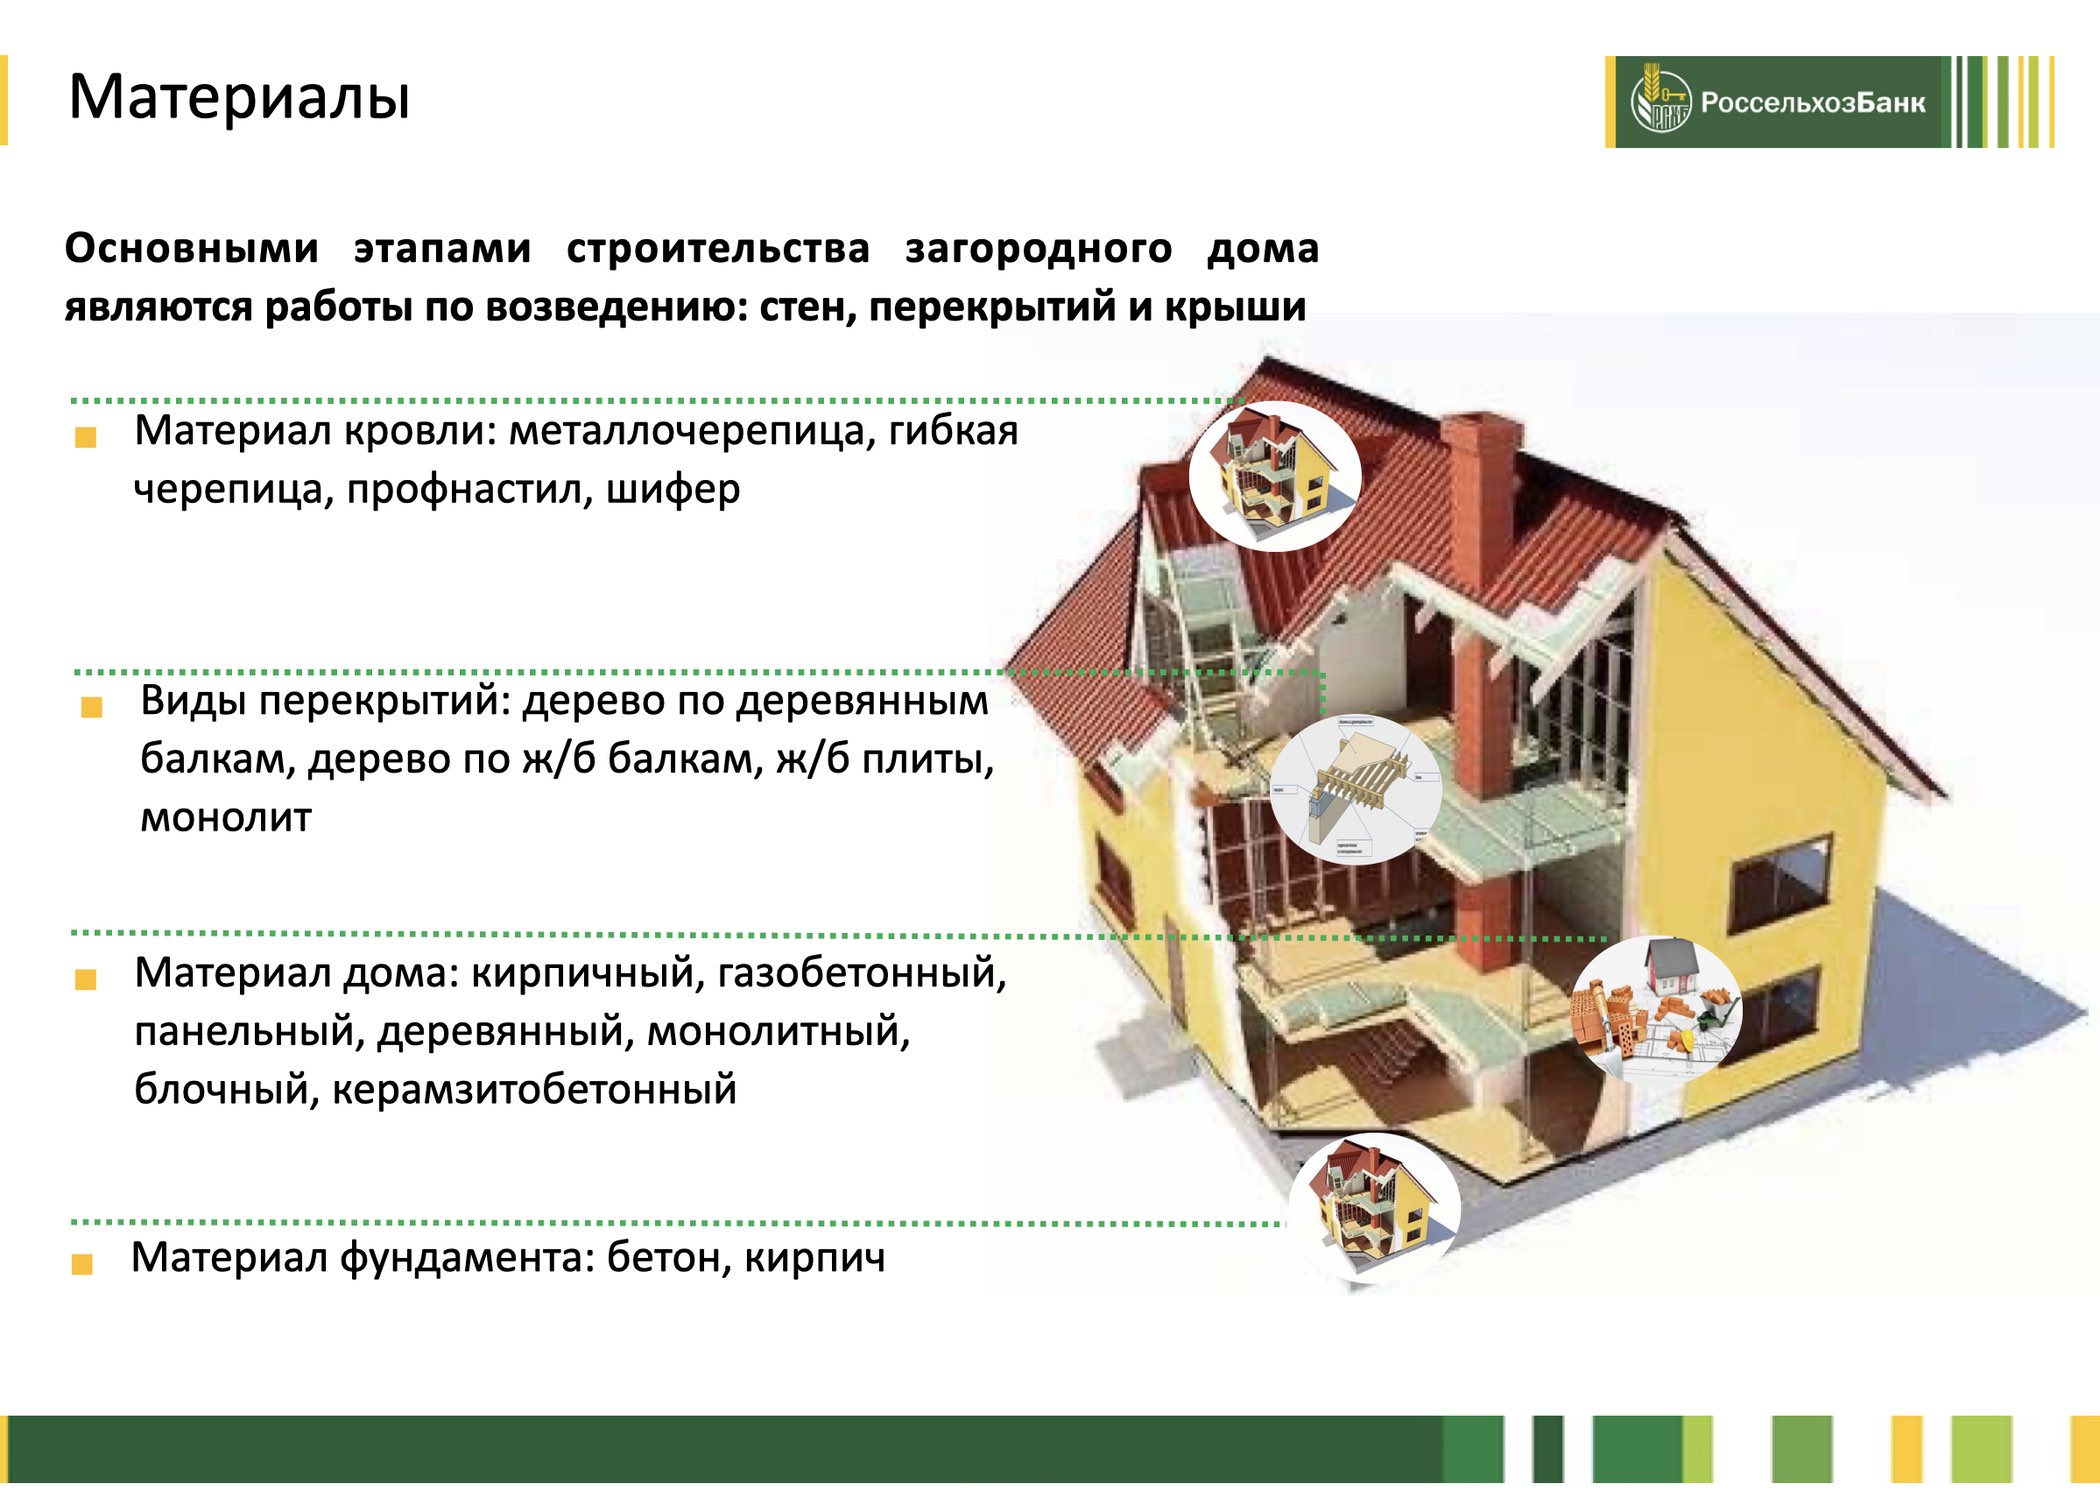 Банк подготовил презентацию с требованиями к дому